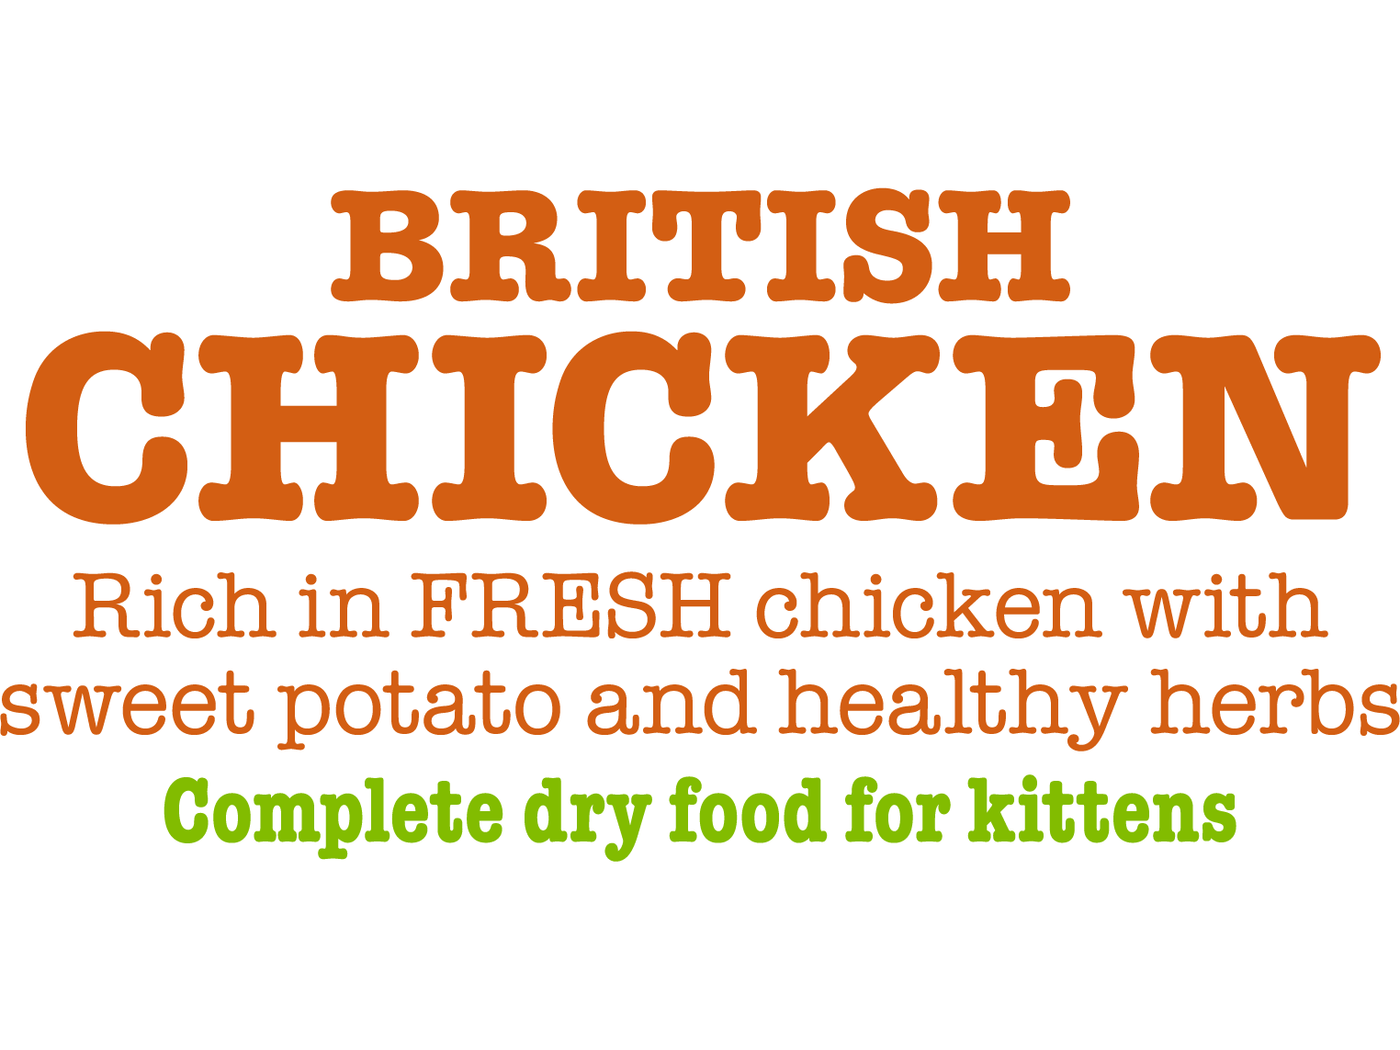 طعام جاف كامل للقطط الصغيرة من الدجاج البريطاني 375 جم/مخلب كبير صغير